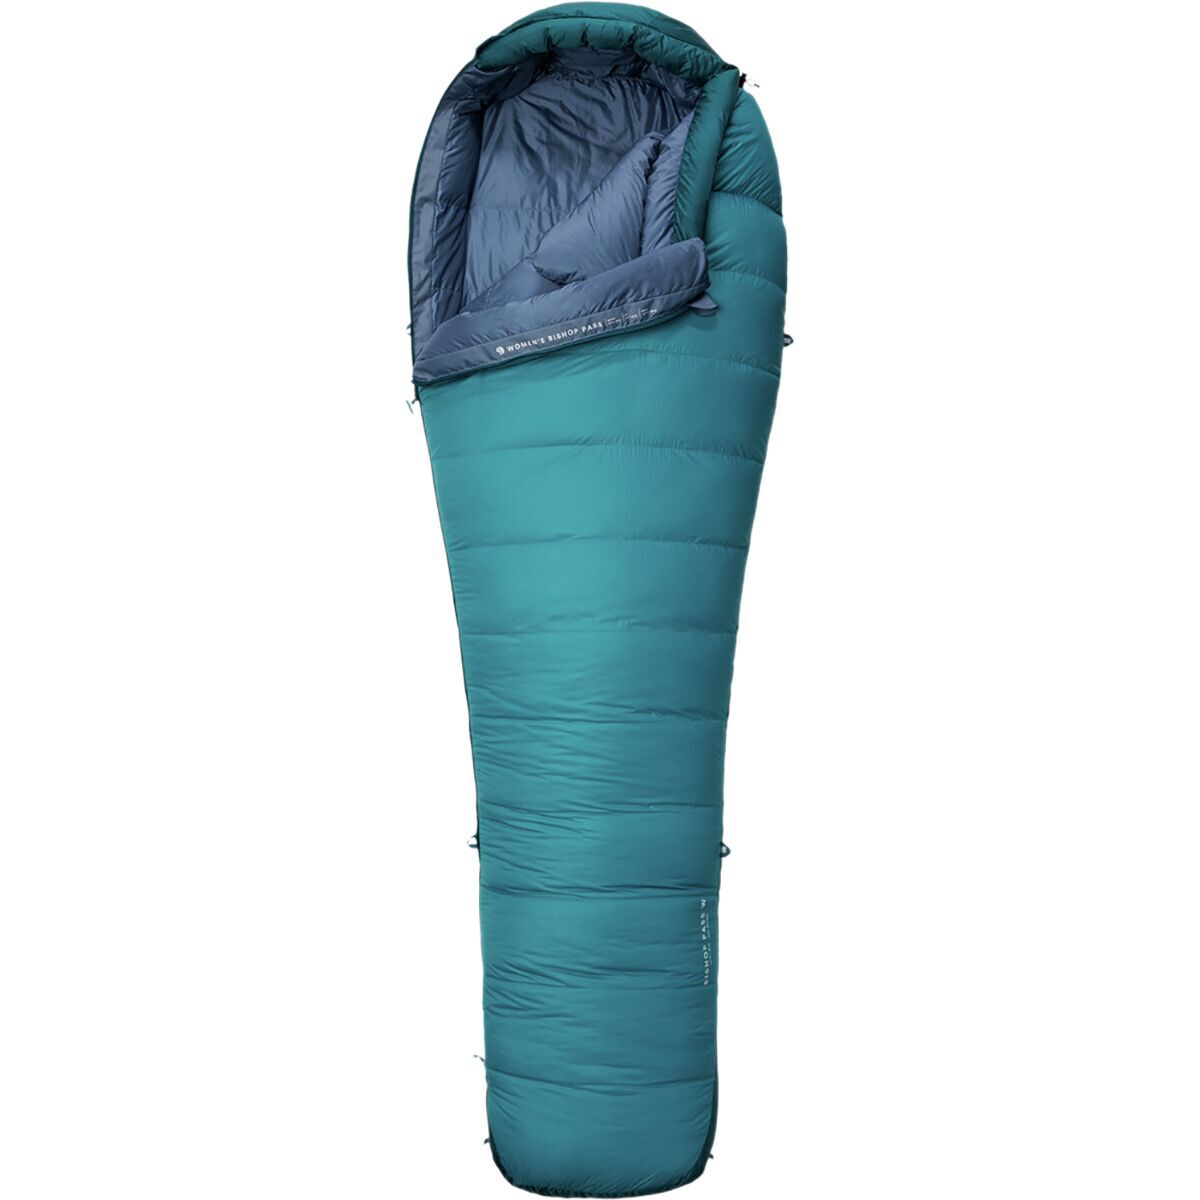 Mountain Hardwear Bishop Pass Sleeping Bag: 15F Down - Women's